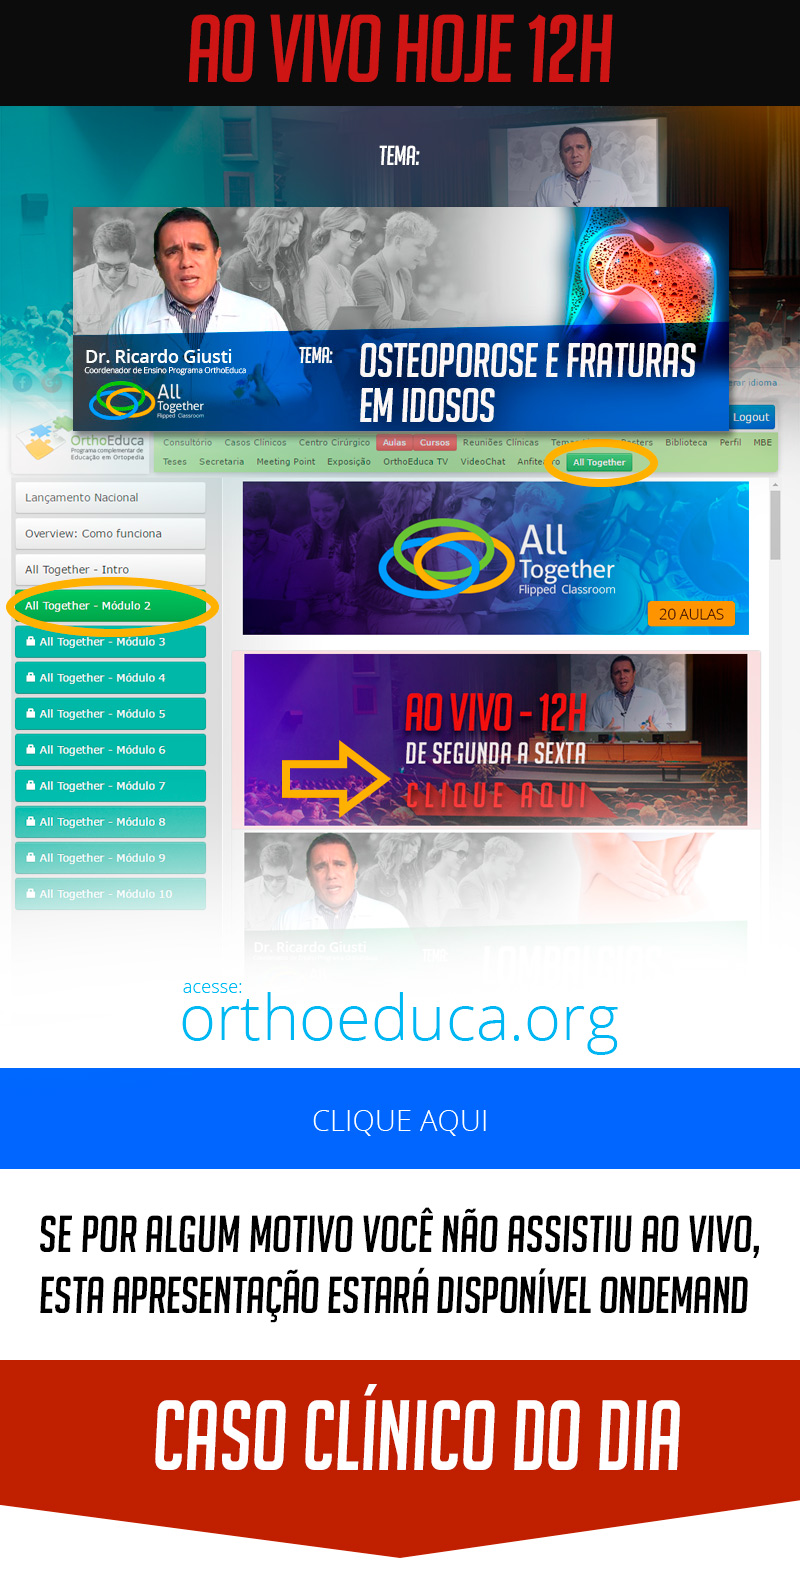 Osteoporose e Fraturas em Idosos - Caso clnico de hoje no All Together s 12h Participe!